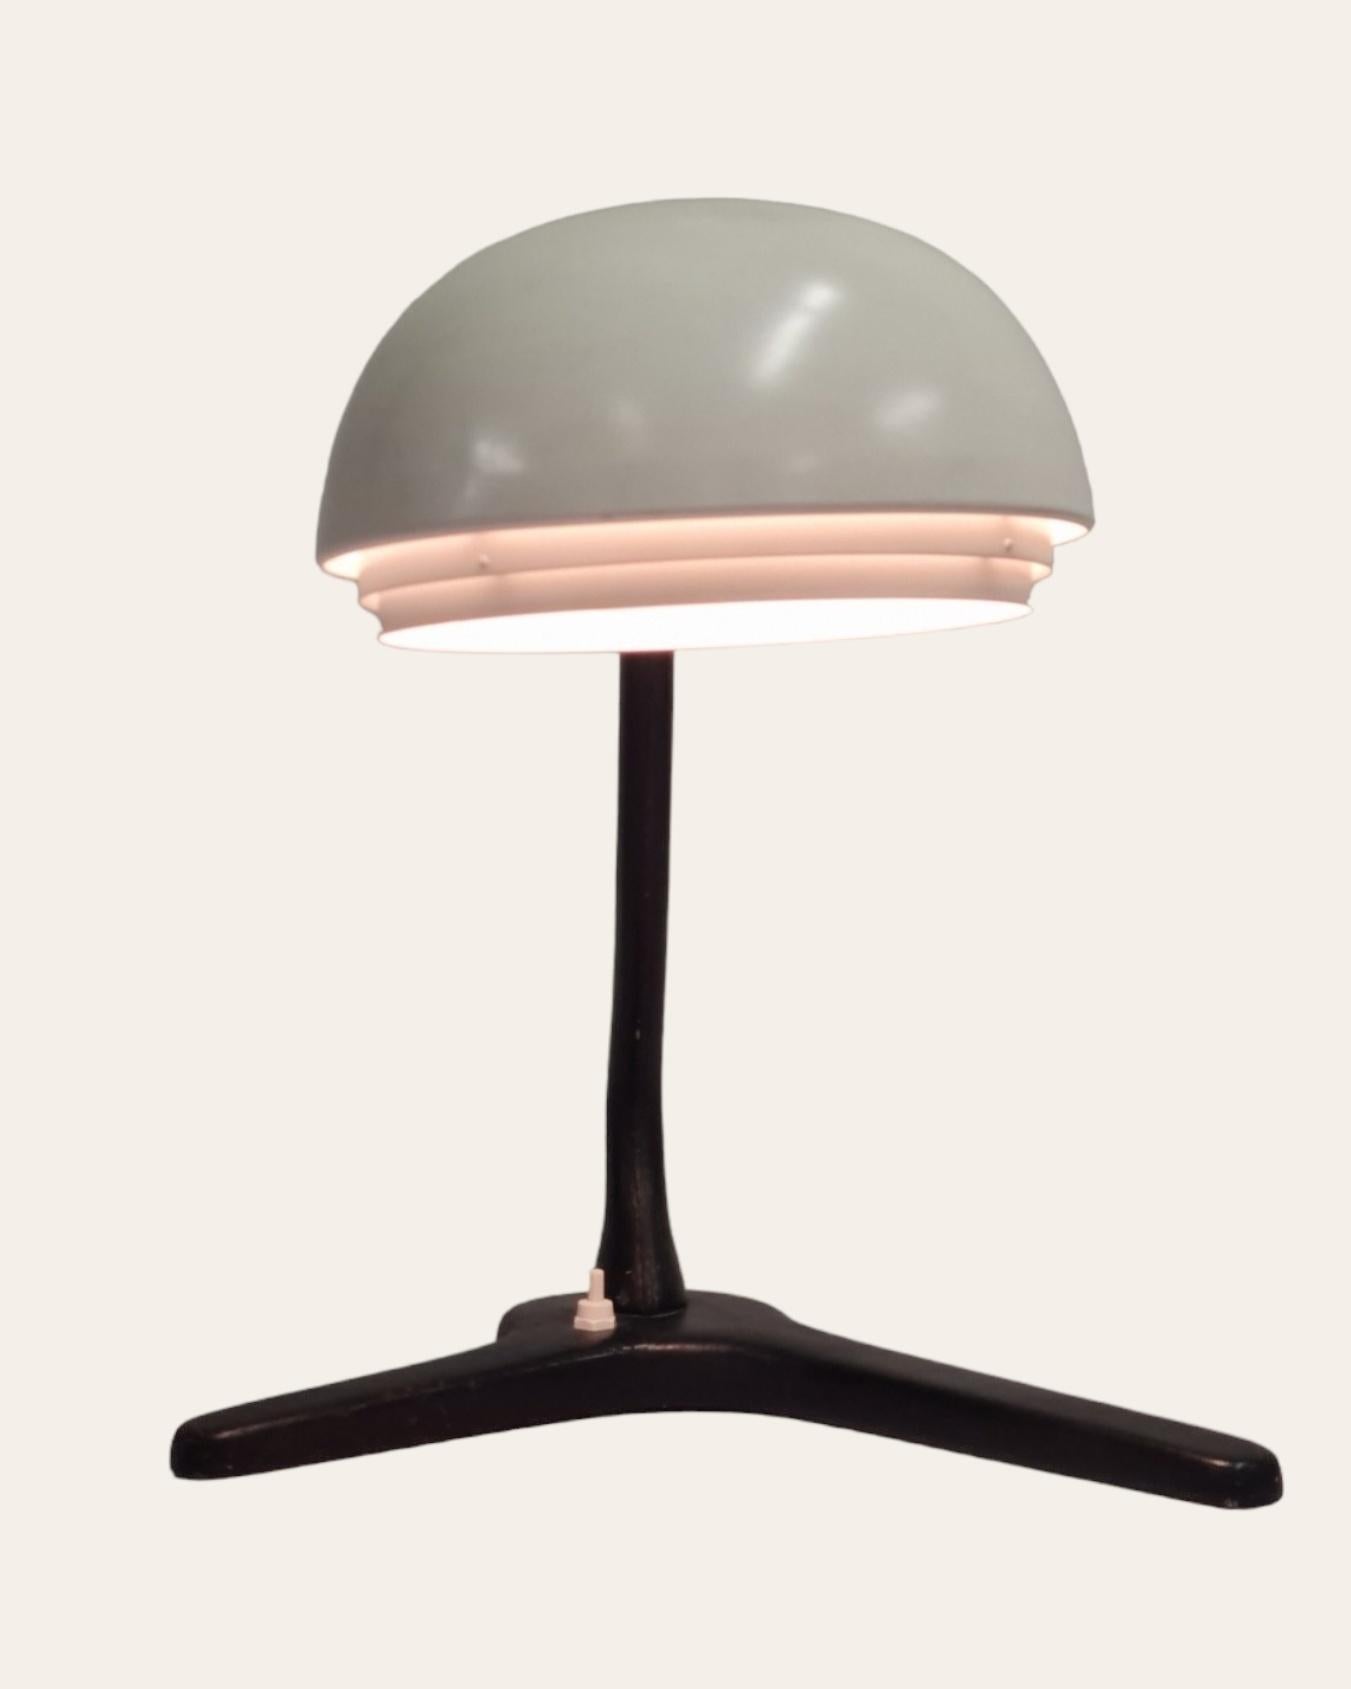 Finnish Alvar Aalto Table Lamp Model A704, 1950s Valaistustyö Ky For Sale